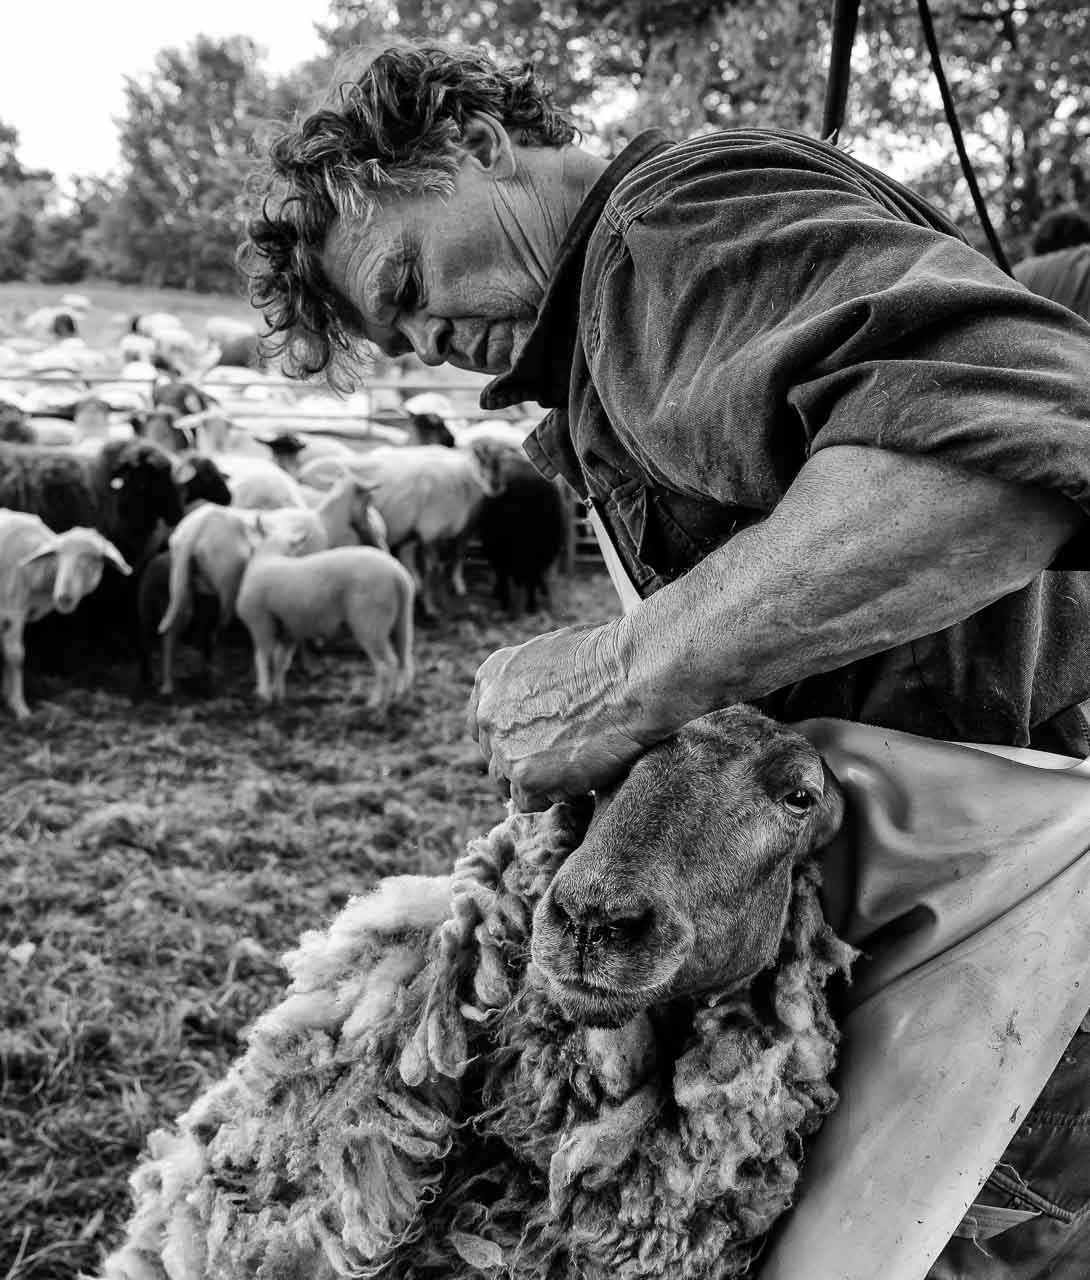 Einmal im Jahr werden die Schafe geschoren, hier auf offenem Feld in der Barker Heide. Die Wanderschäfereien in Schleswig-Holstein engagieren für diese Aufgabe professionelle Scherer, die meistens im Team arbeiten und elektrisch betriebene Geräte einsetzen. Nur so lässt sich bei einer Herde von über 500 Tieren die erforderliche hohe Scherfrequenz erreichen.